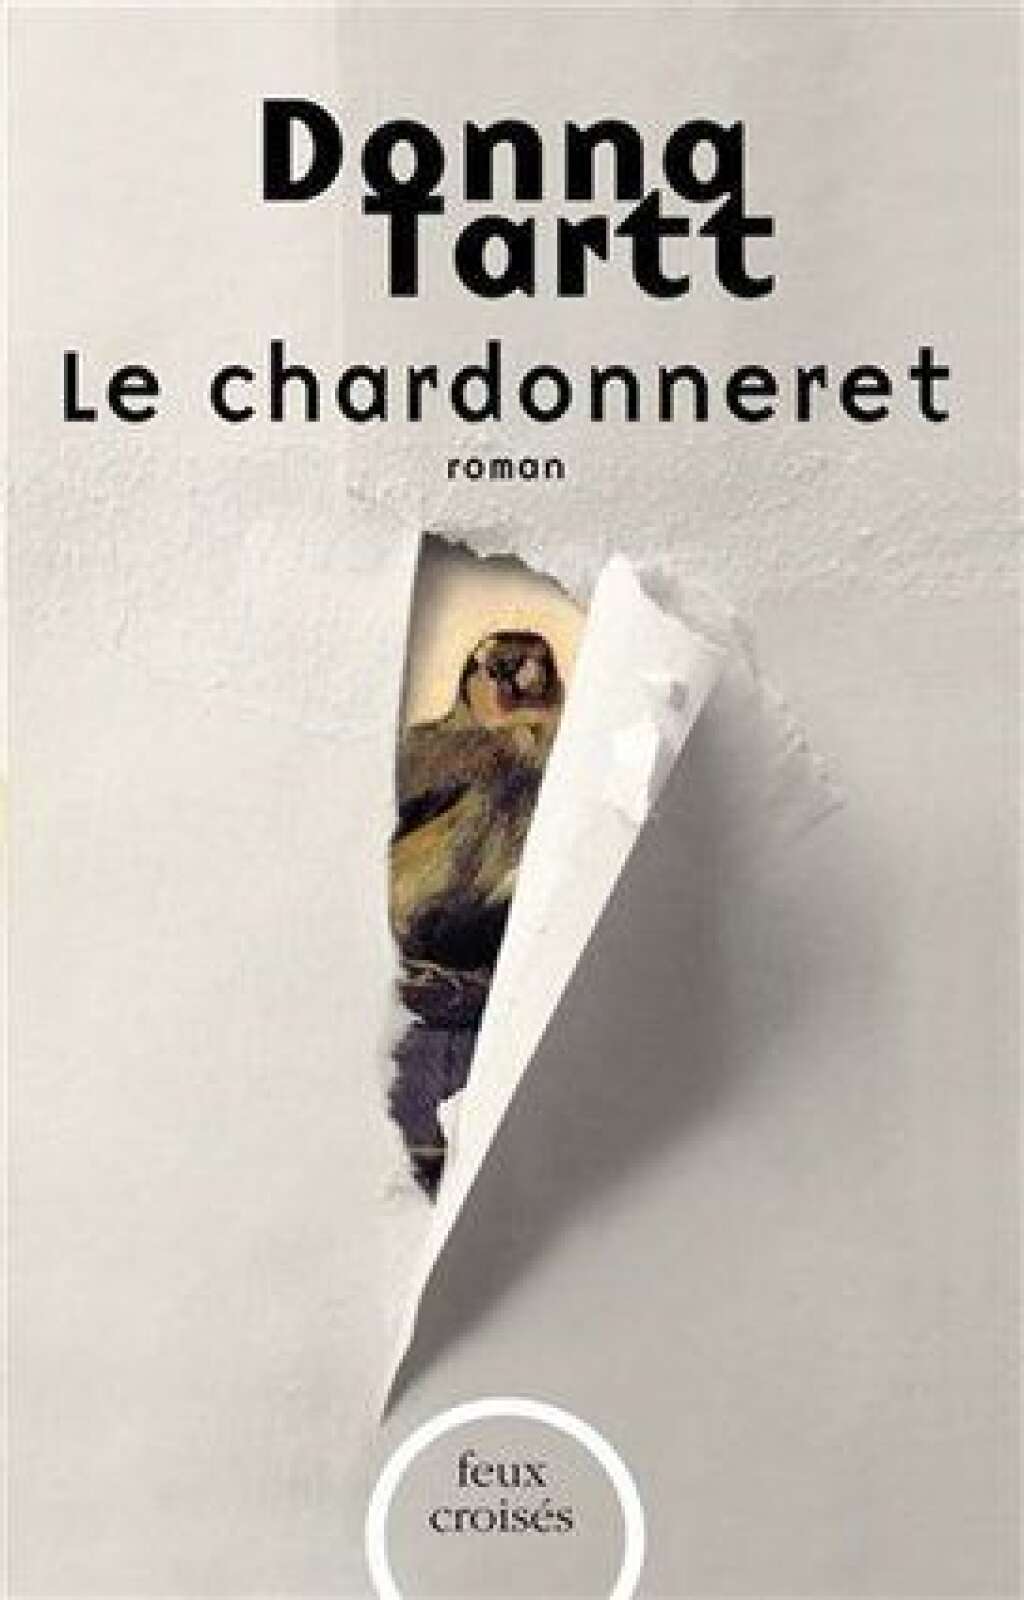 Contre la solitude - Un thriller littéraire, <a href="http://www.lefigaro.fr/livres/2014/04/15/03005-20140415ARTFIG00179-donna-tartt-prix-pulitzer-pour-le-chardonneret.php" target="_blank">prix pulitzer 2014</a>.